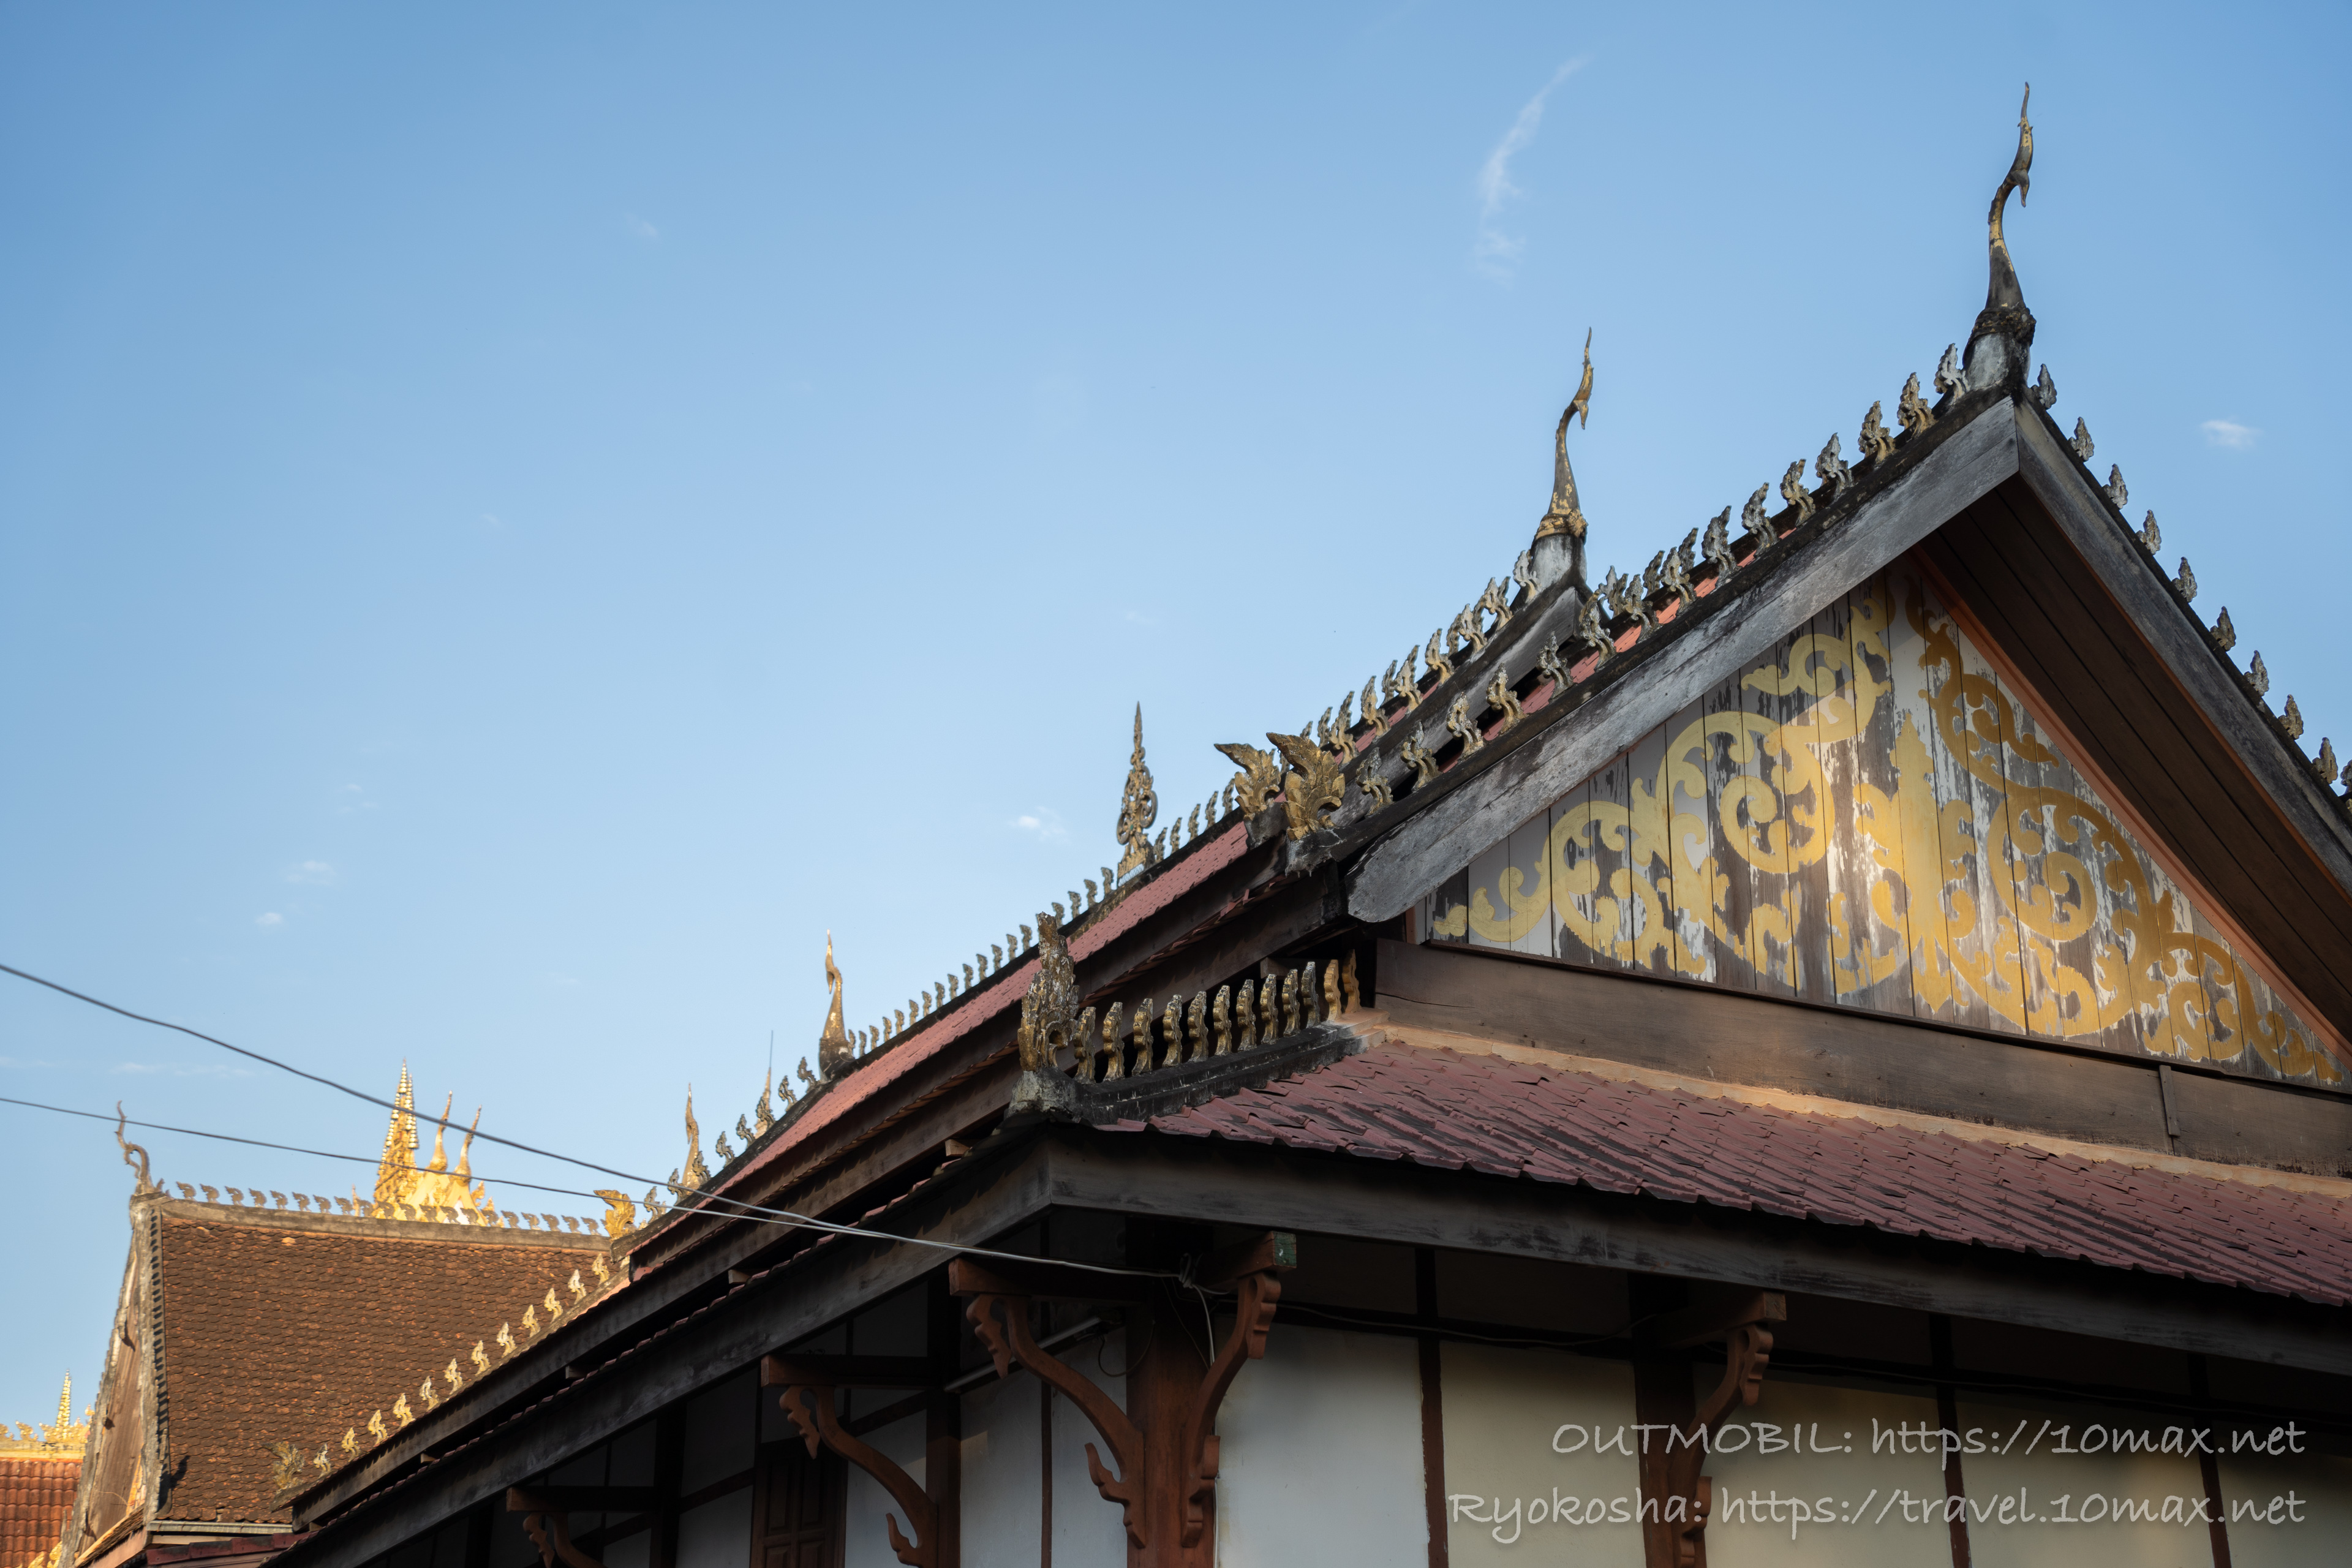 ワット・シーサケットの屋根, ビエンチャン最古の寺